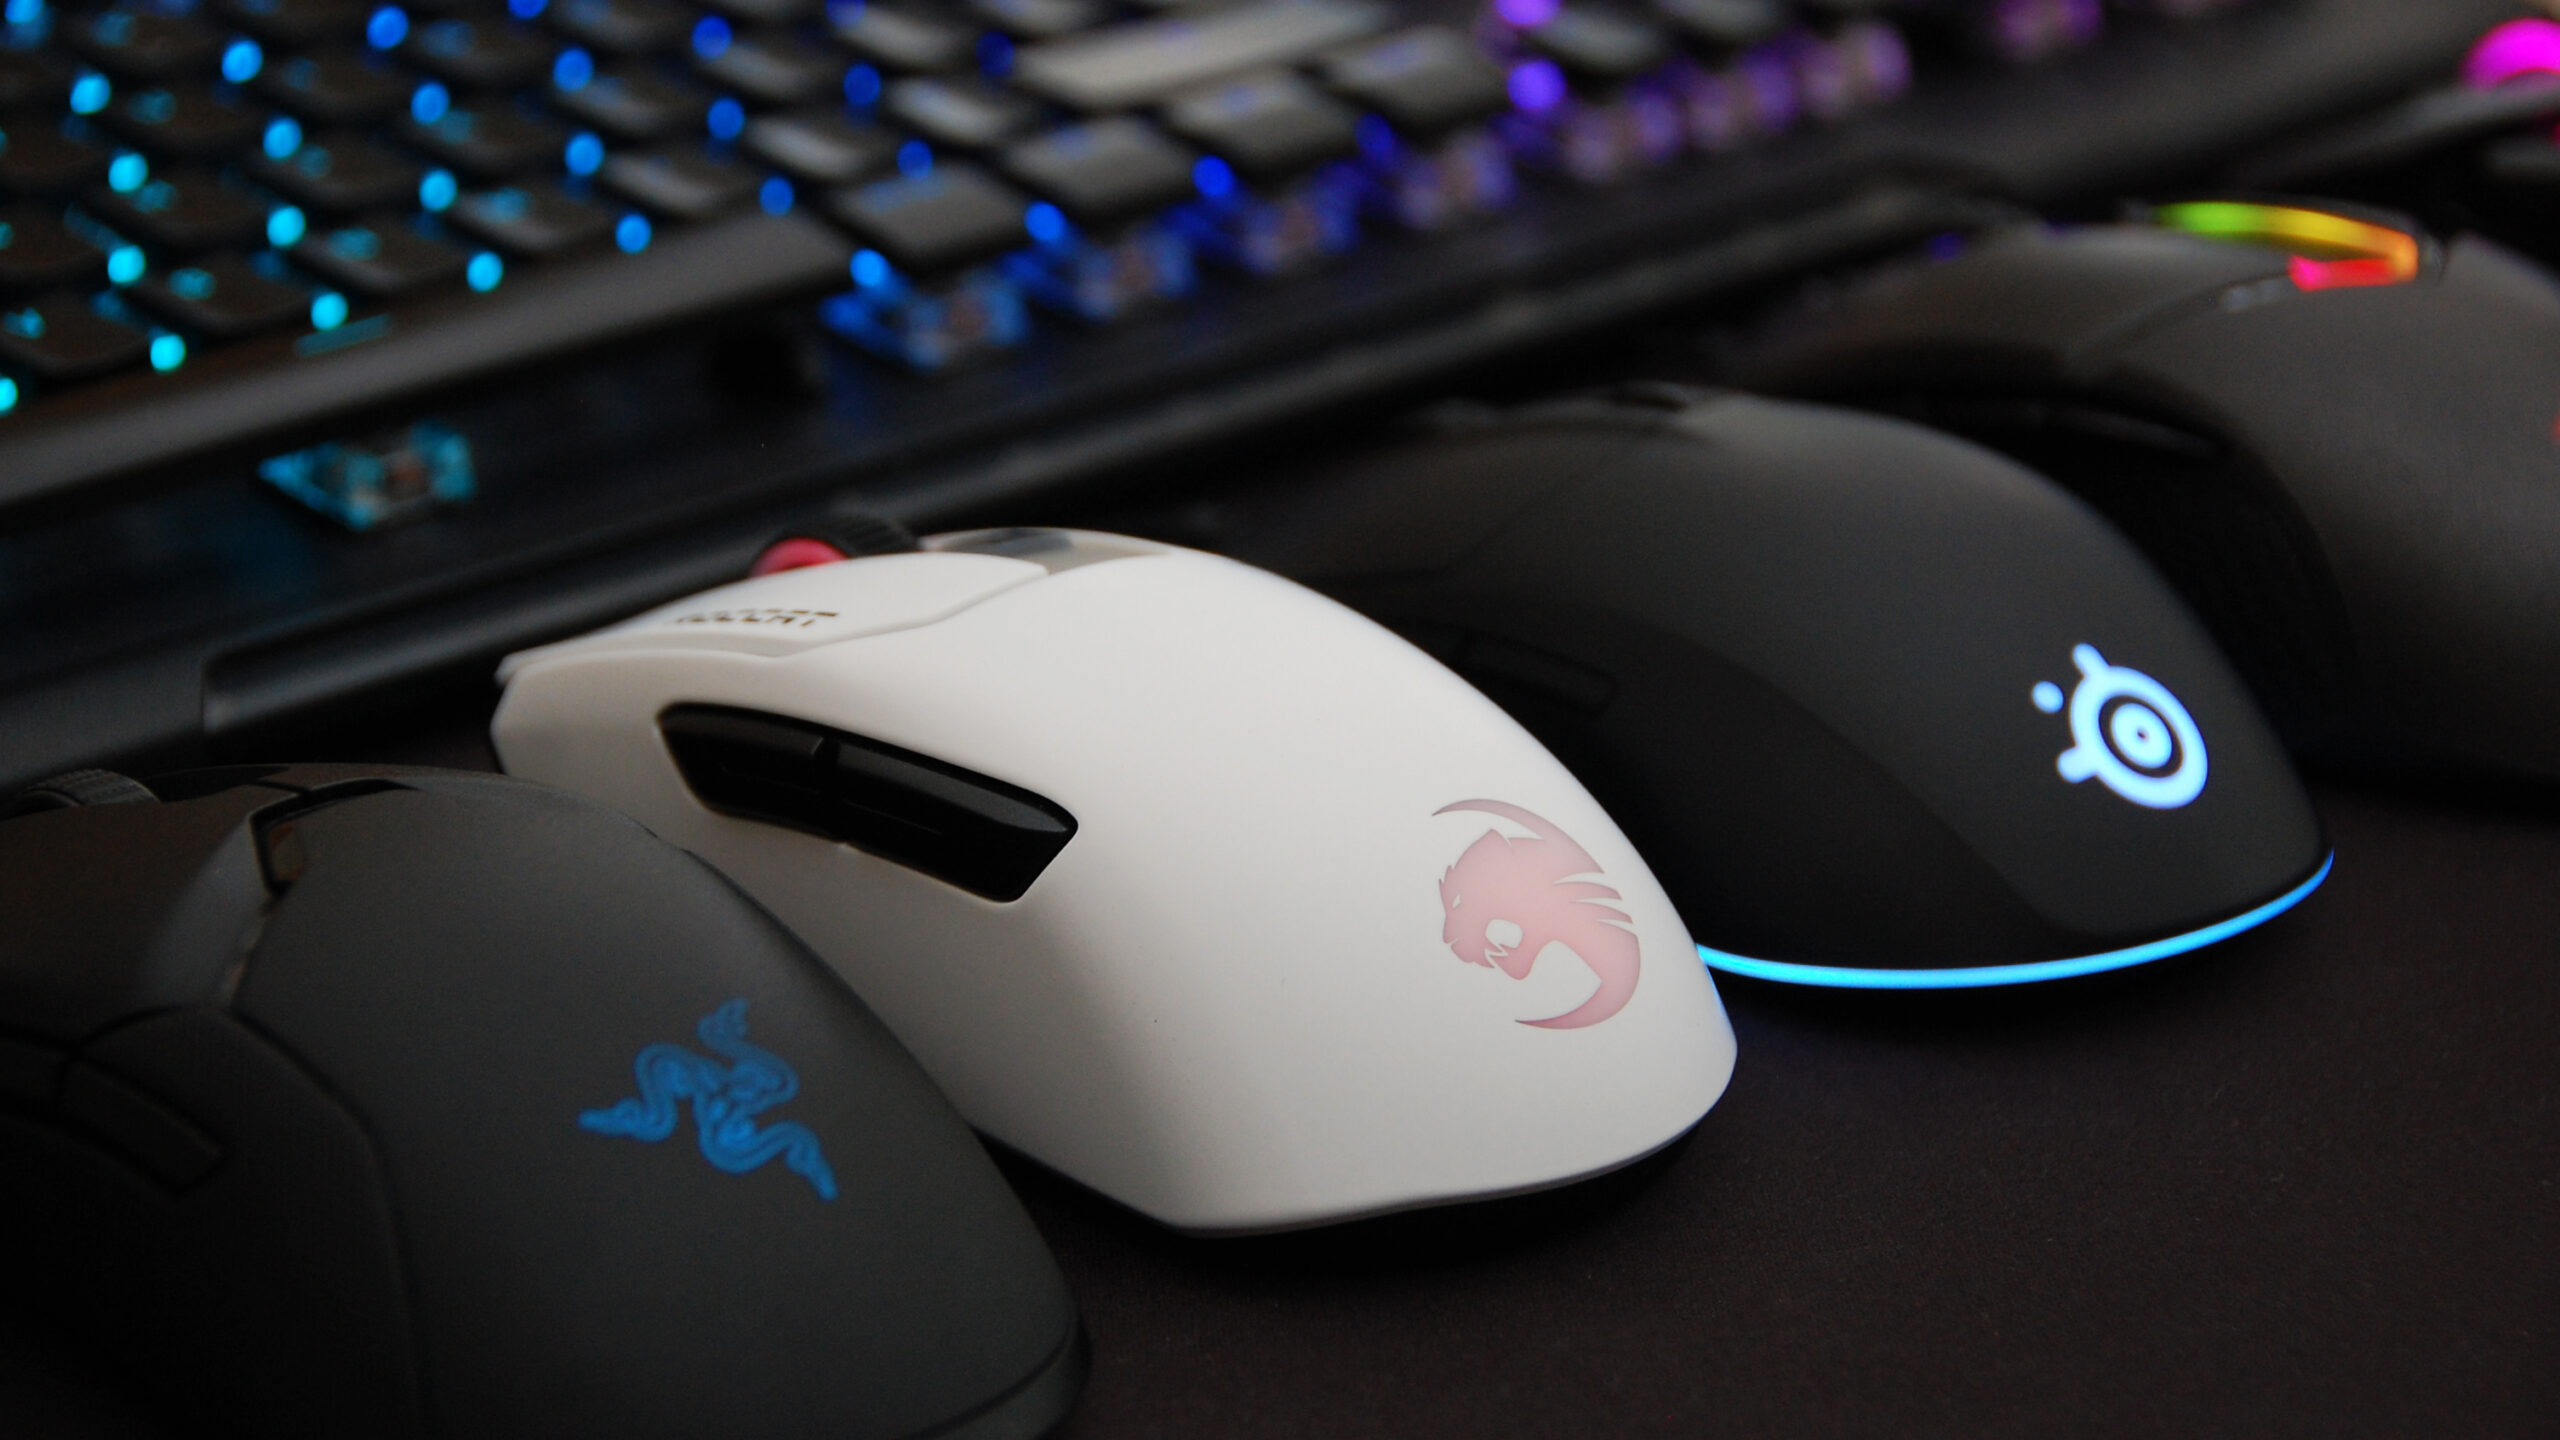 miglior mouse da gaming